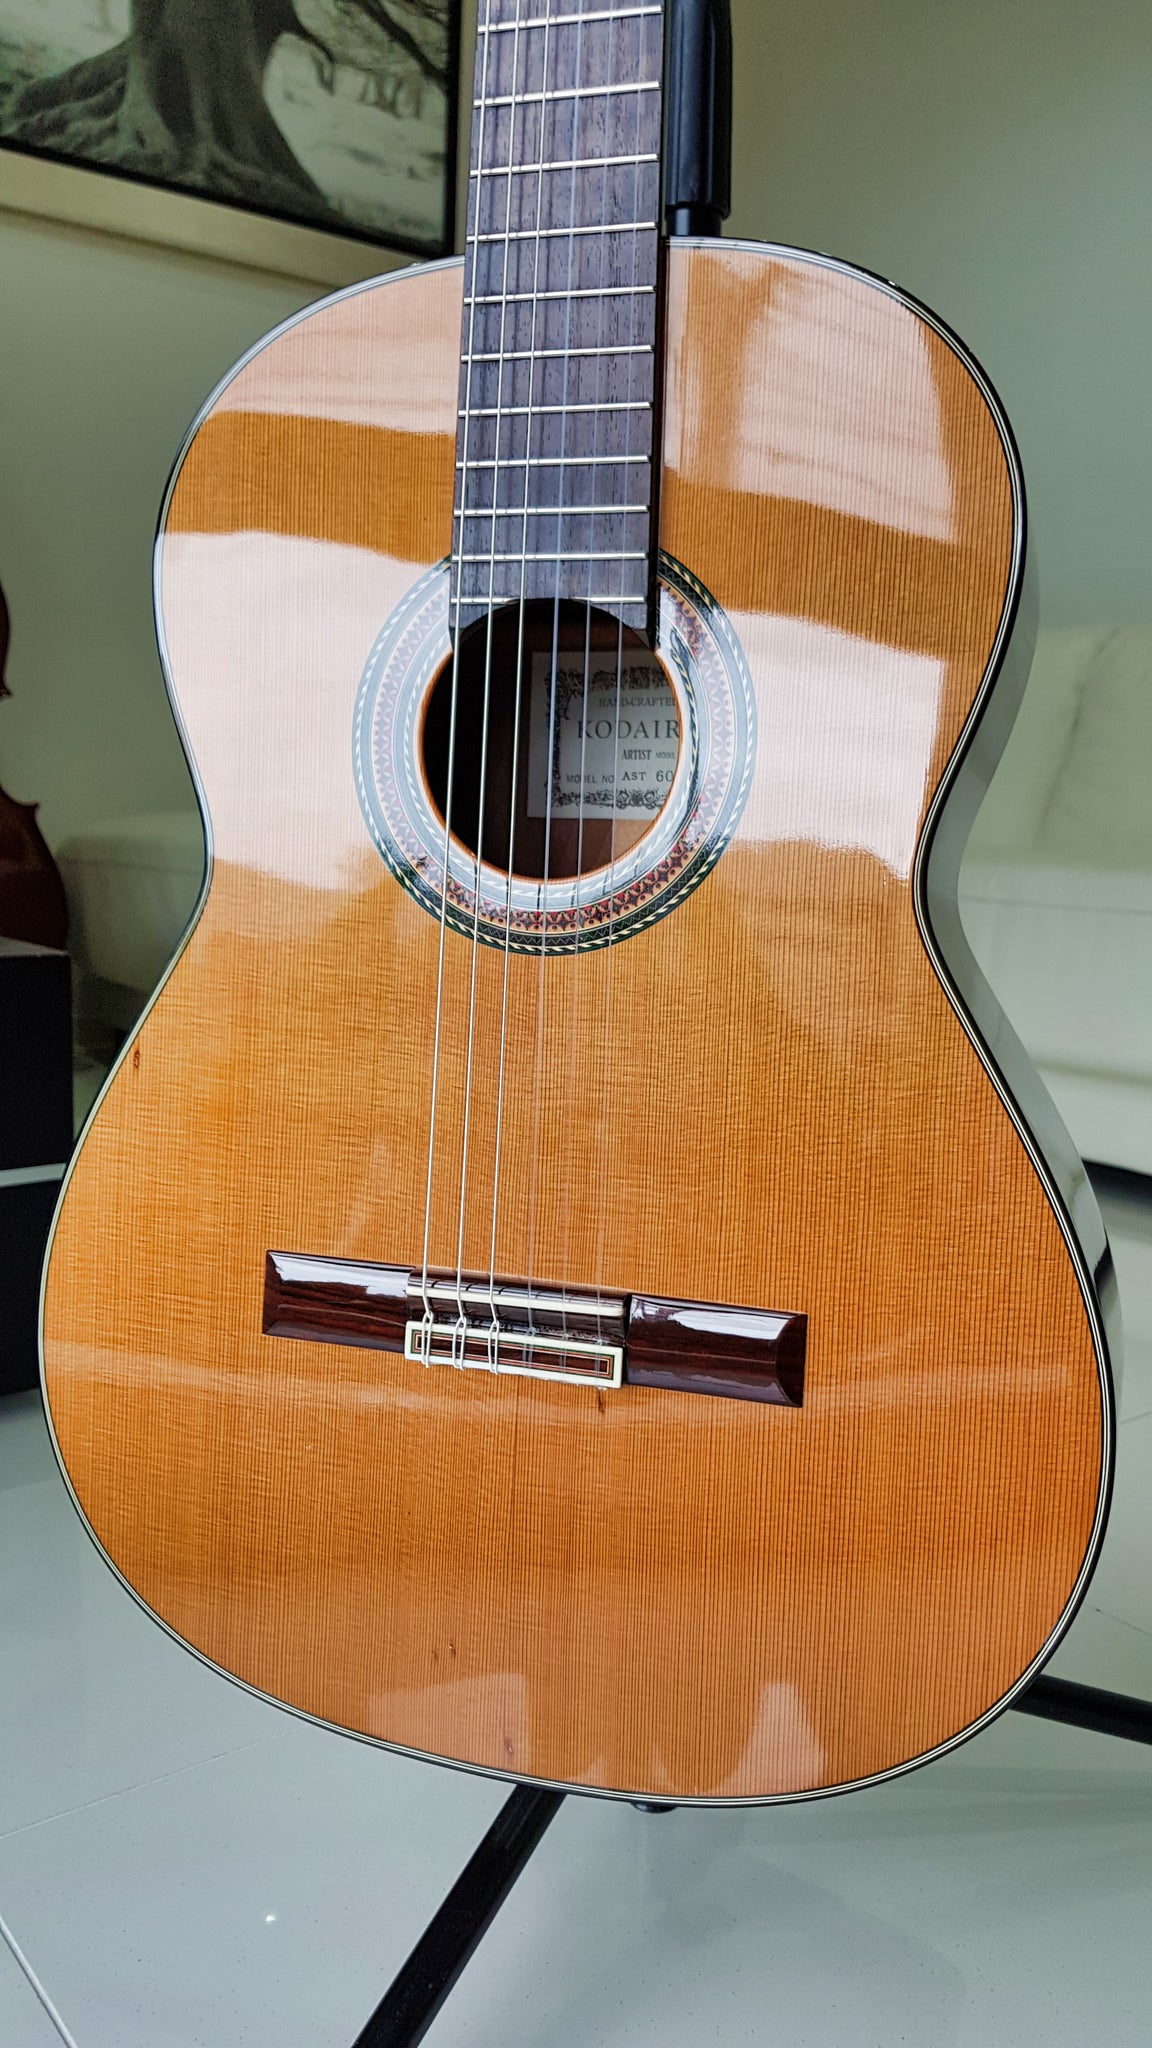 Kodaira AST-60 Classical Guitar – Neil Ta Music